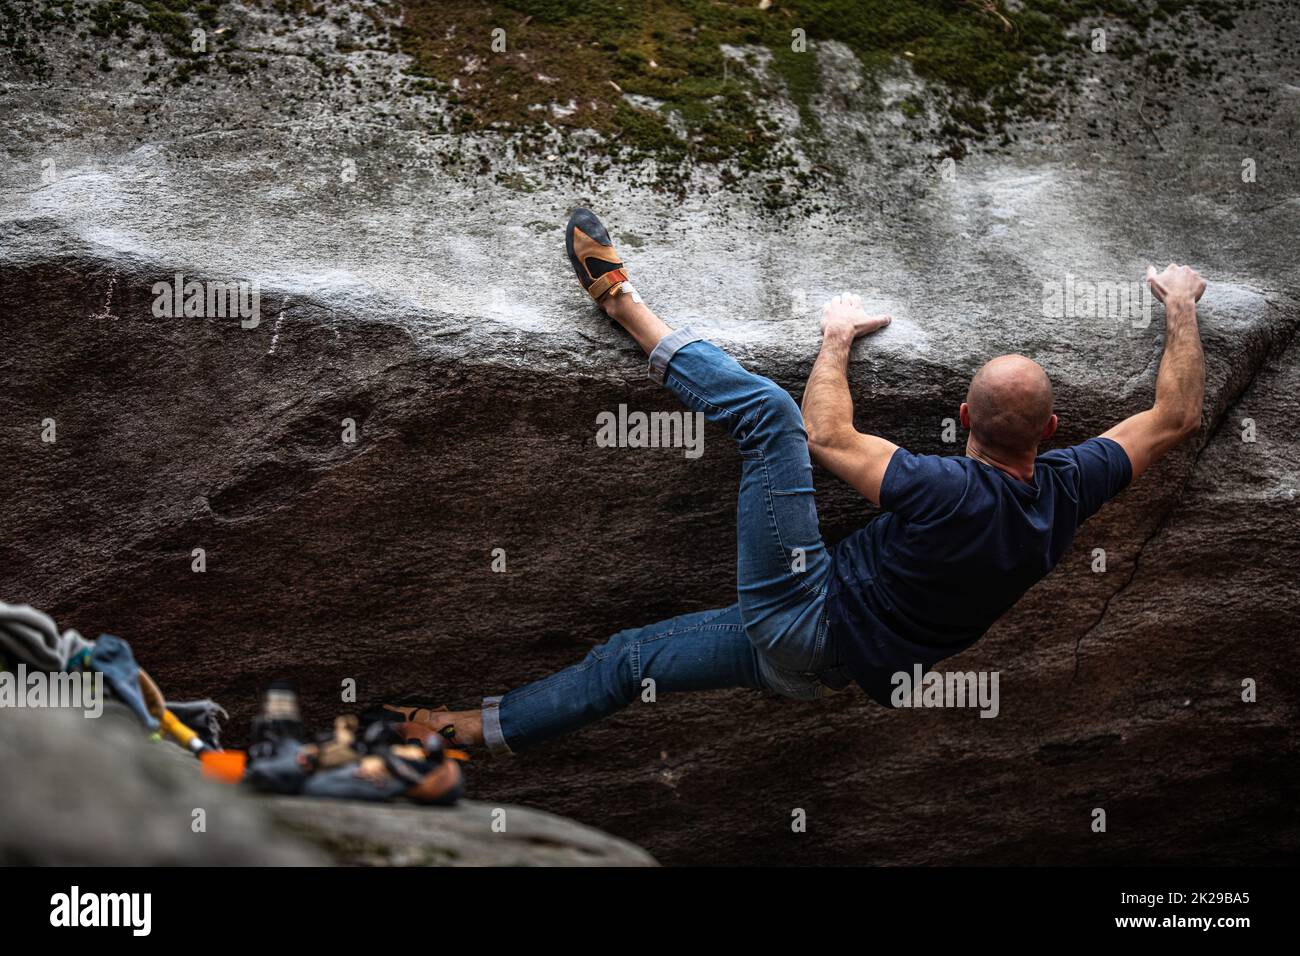 Ein Kletterer, der im Freien auf einem Felsbrocken klettert. Gruppe von Freunden, die sich im Freien mit Sport beschäftigen. Stockfoto